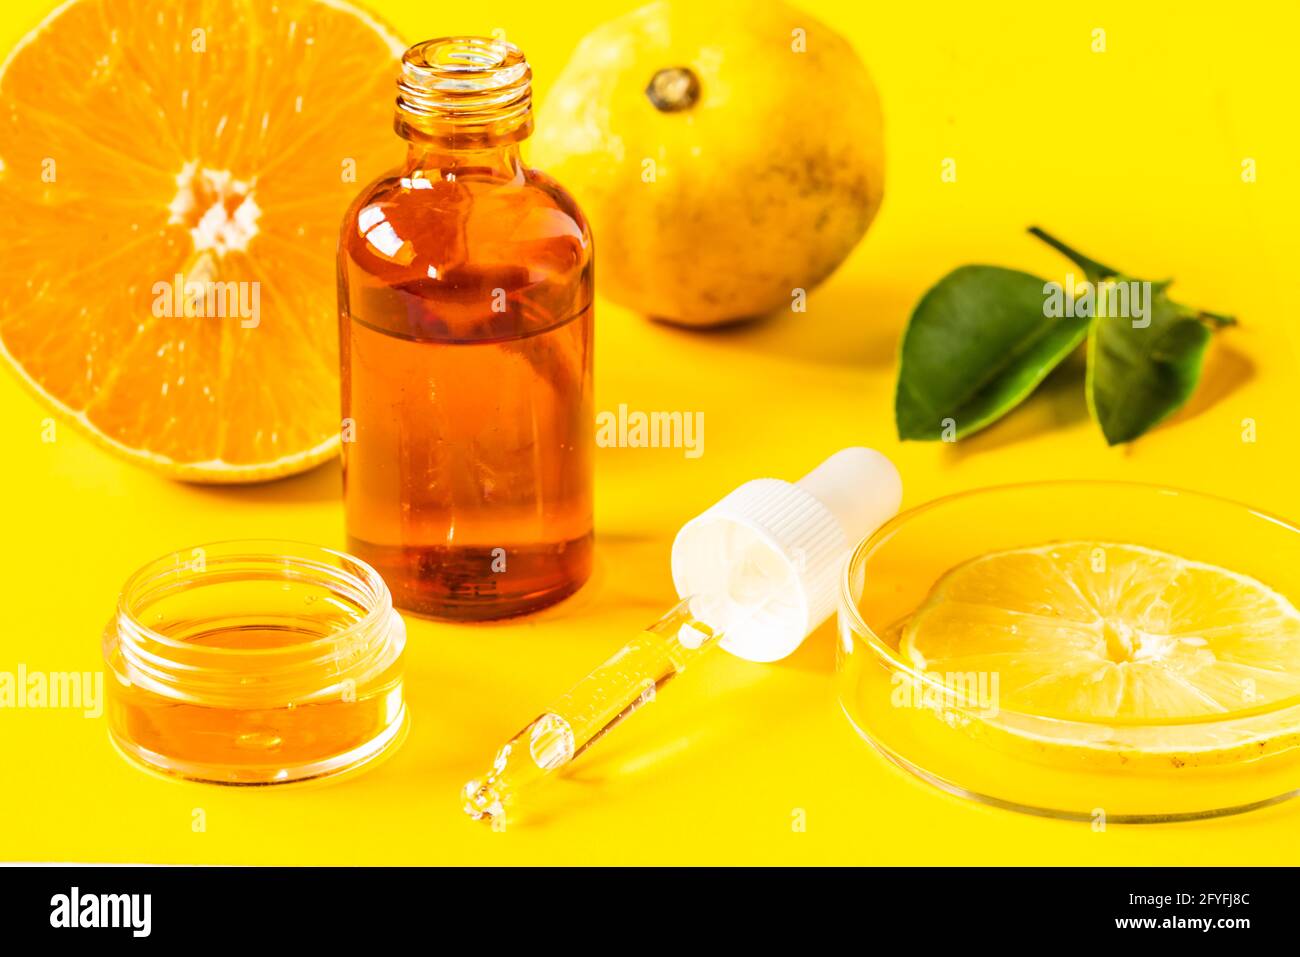 Ilustración sobre el uso de la vitamina C en la fabricación de cosméticos. Foto de stock